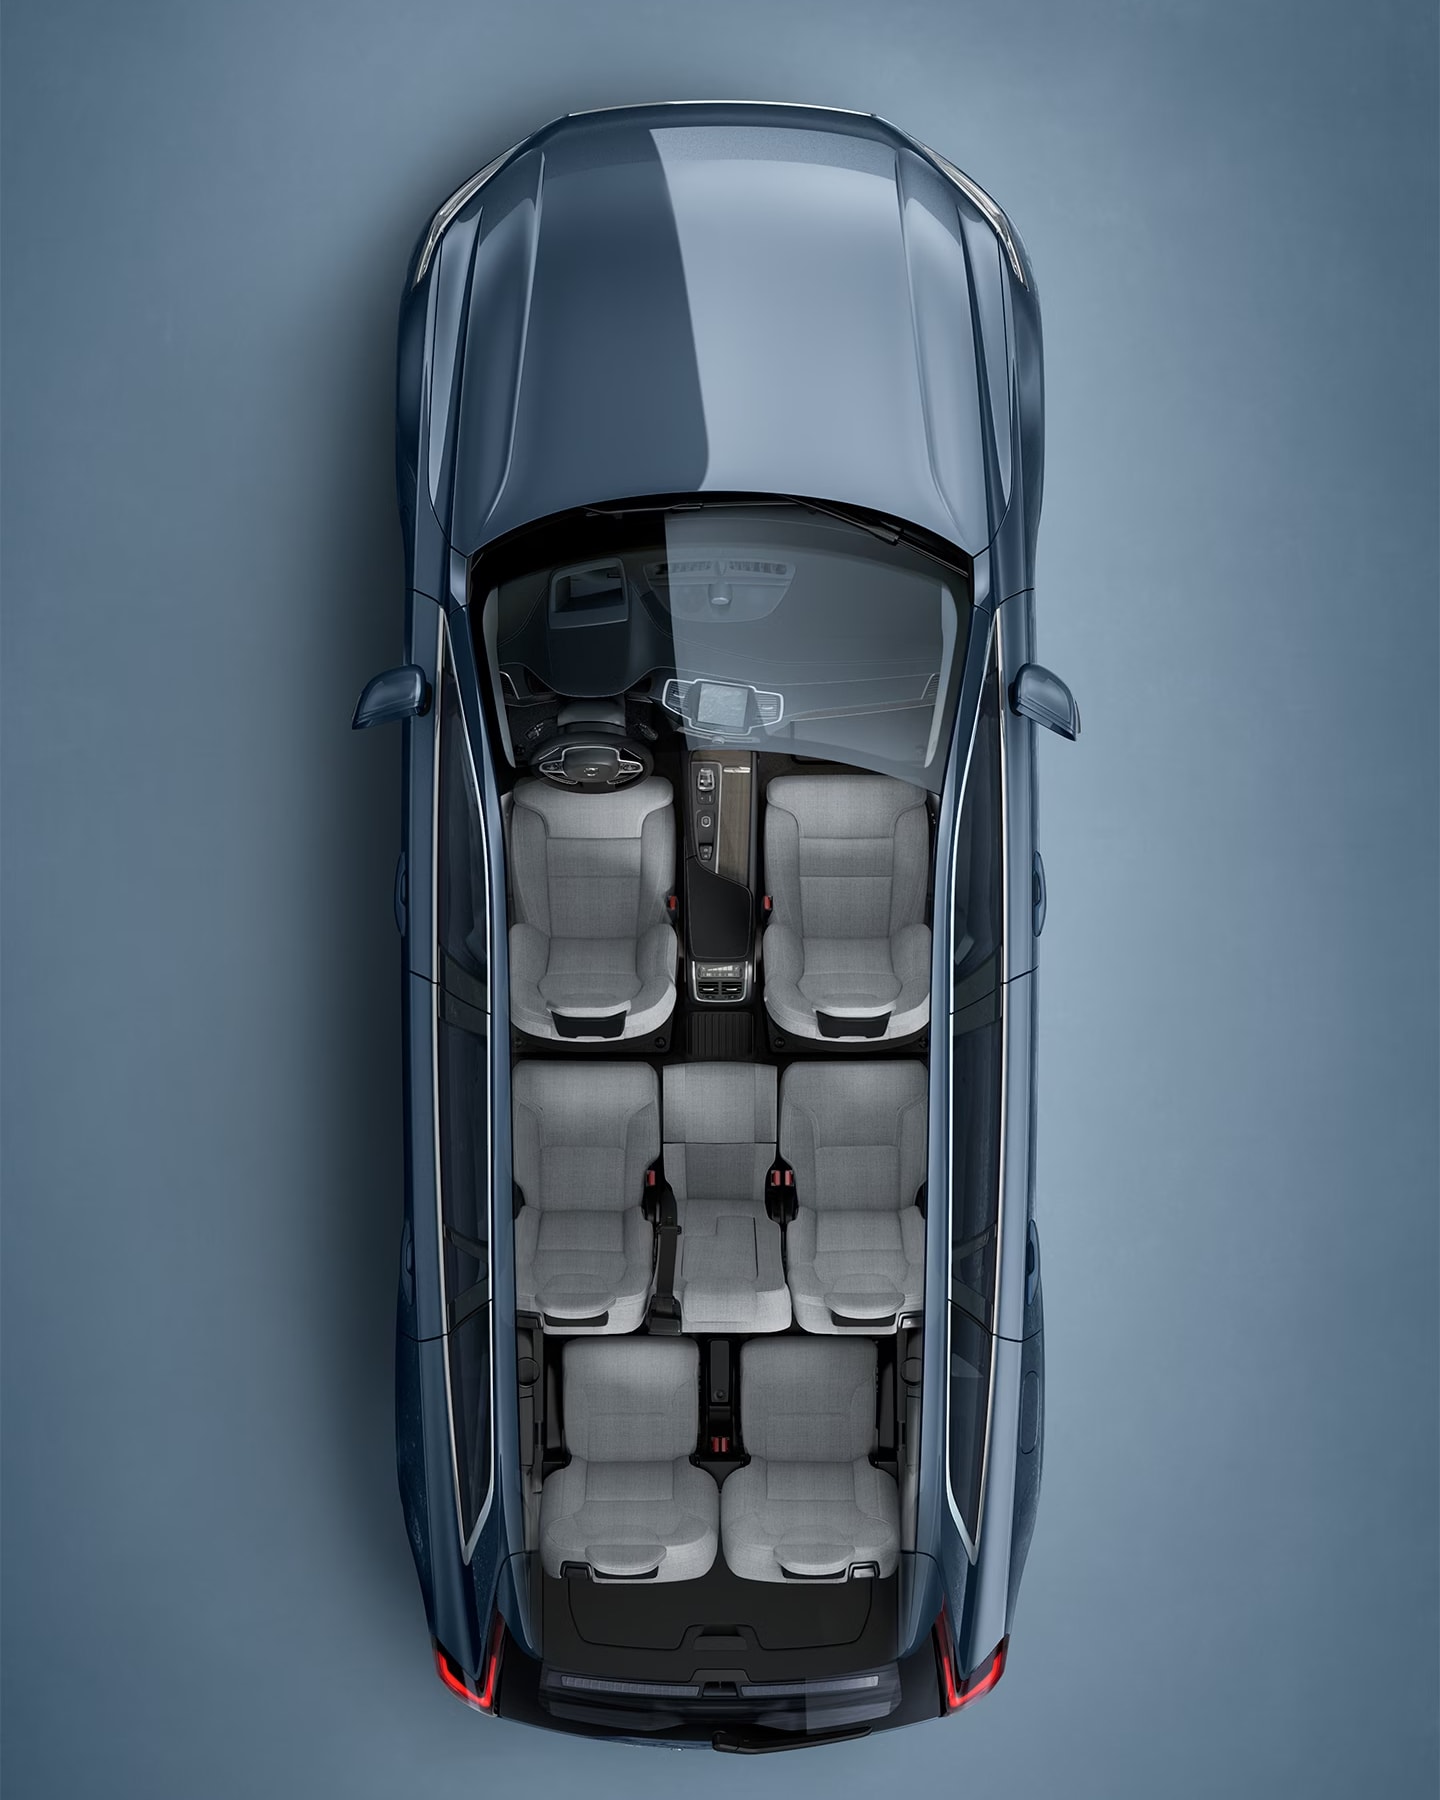 Un SUV Volvo XC90 azul visto directamente desde arriba con el interior visible.